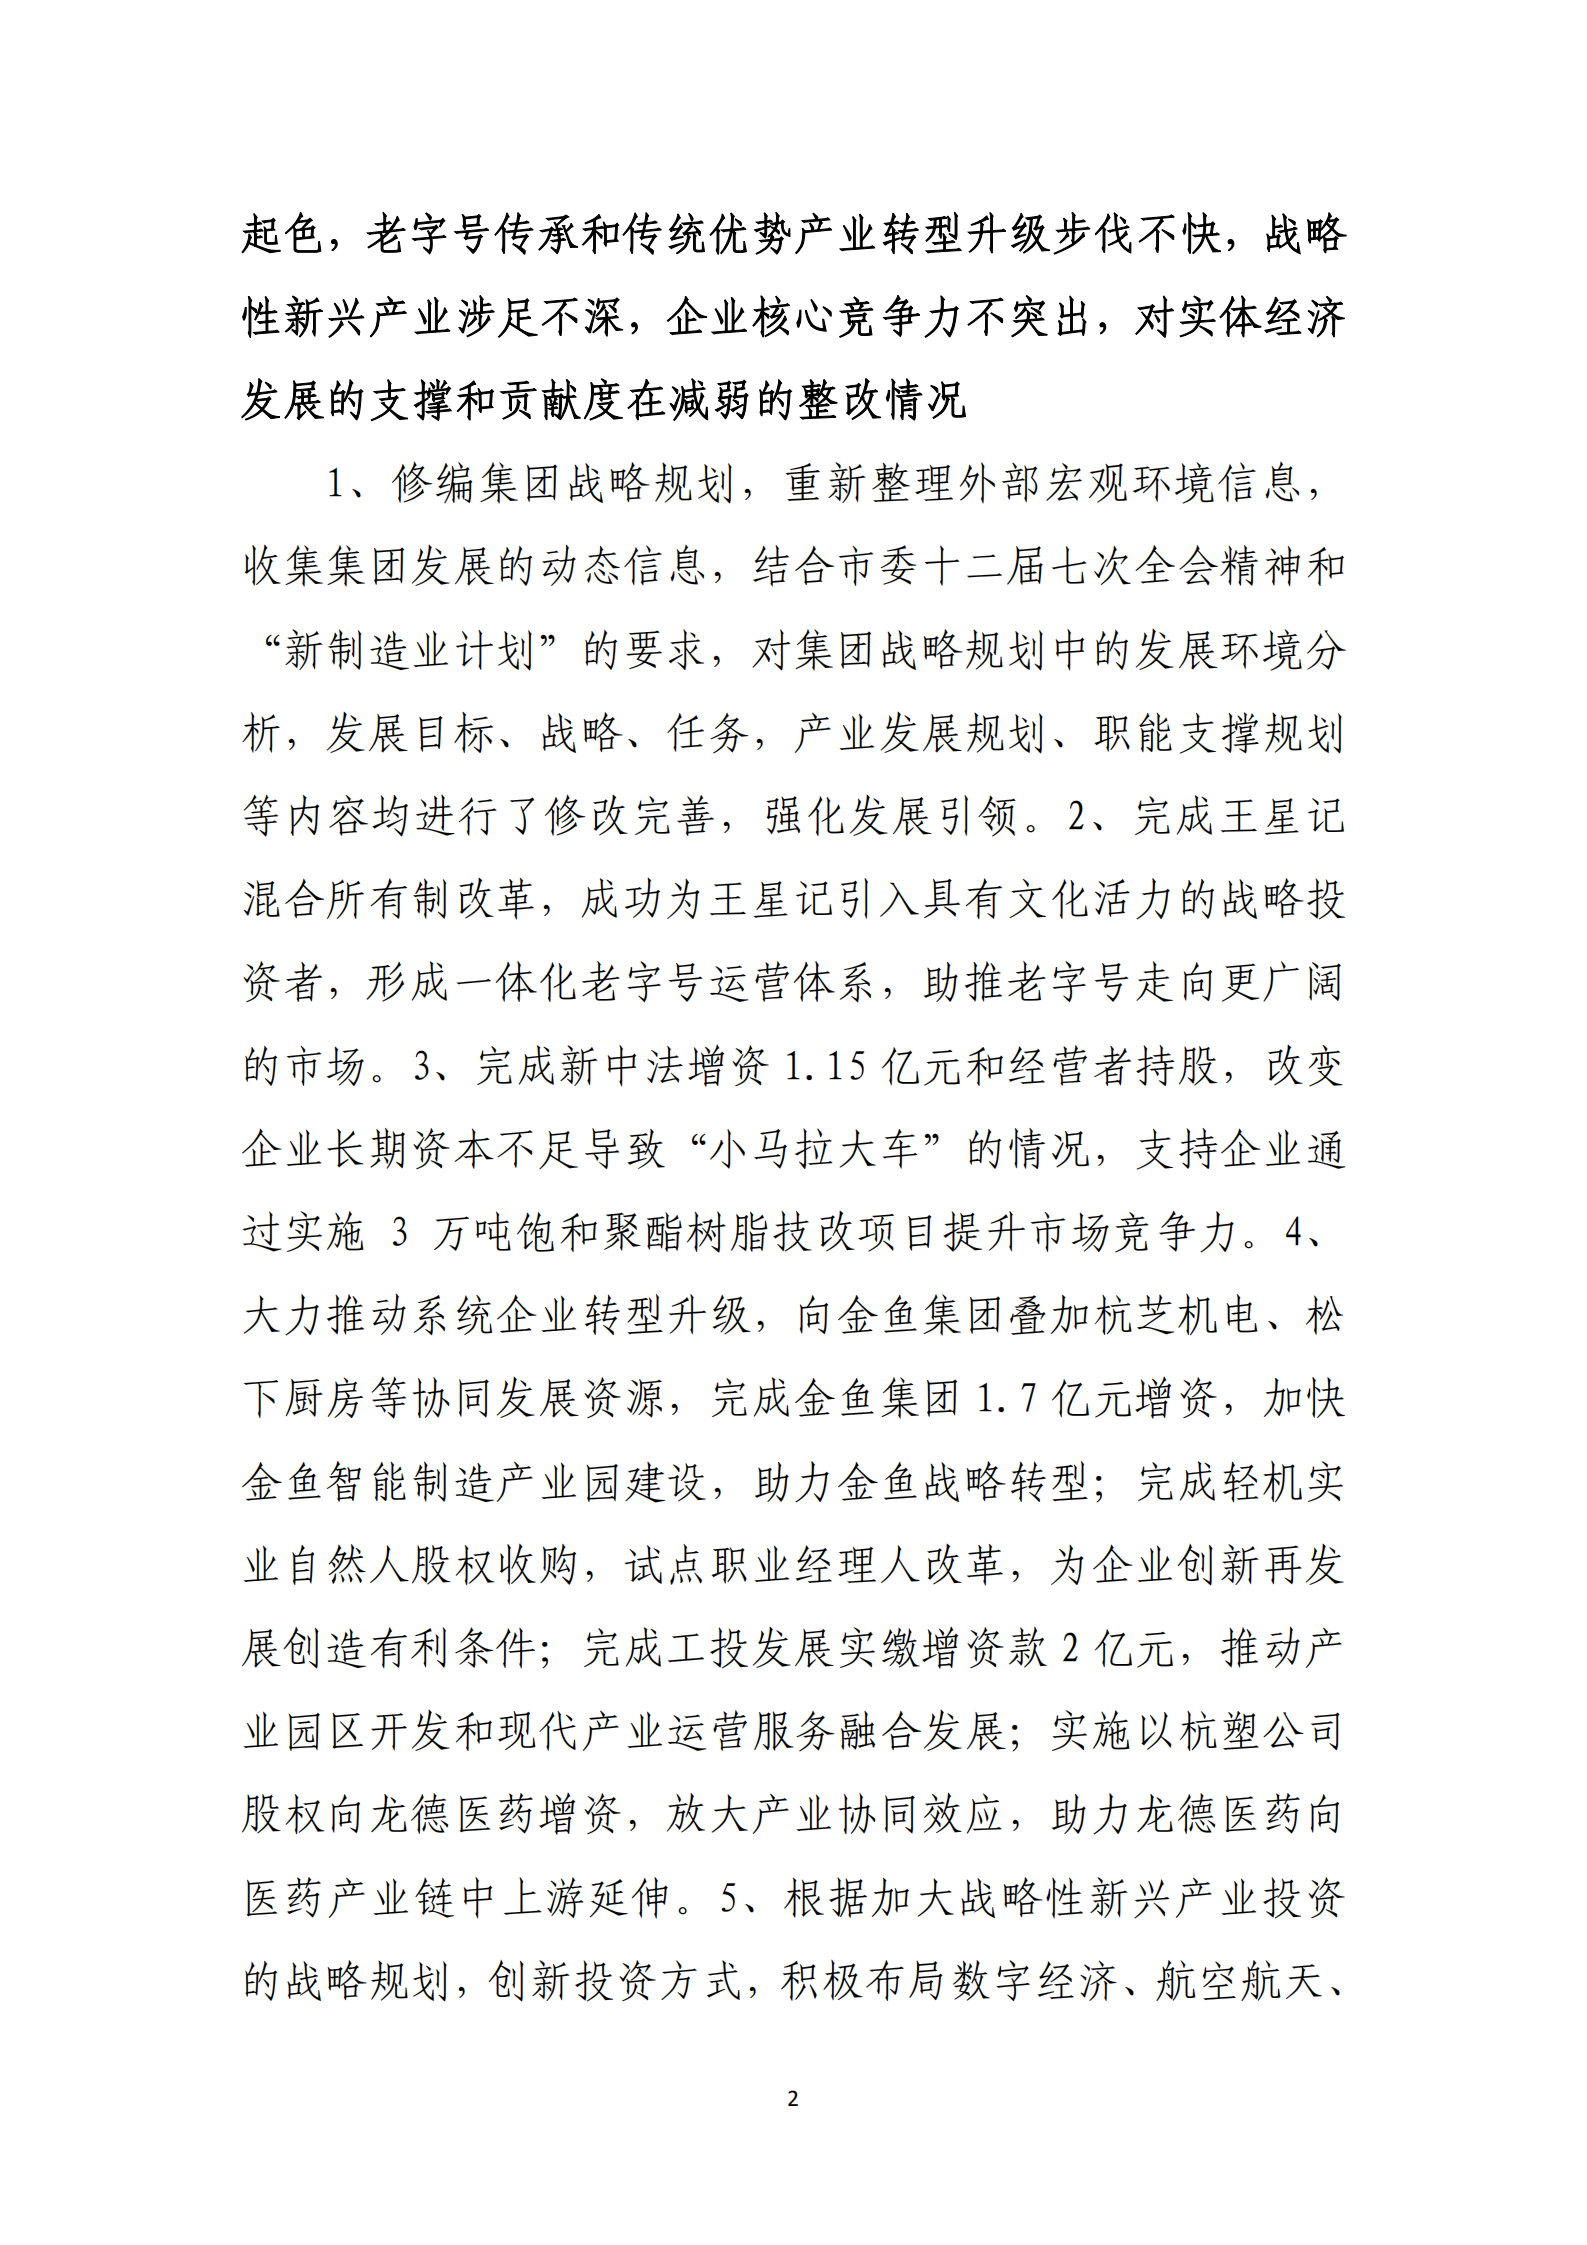 乐虎国际游戏官网党委关于巡察整改情况的通报_01.png